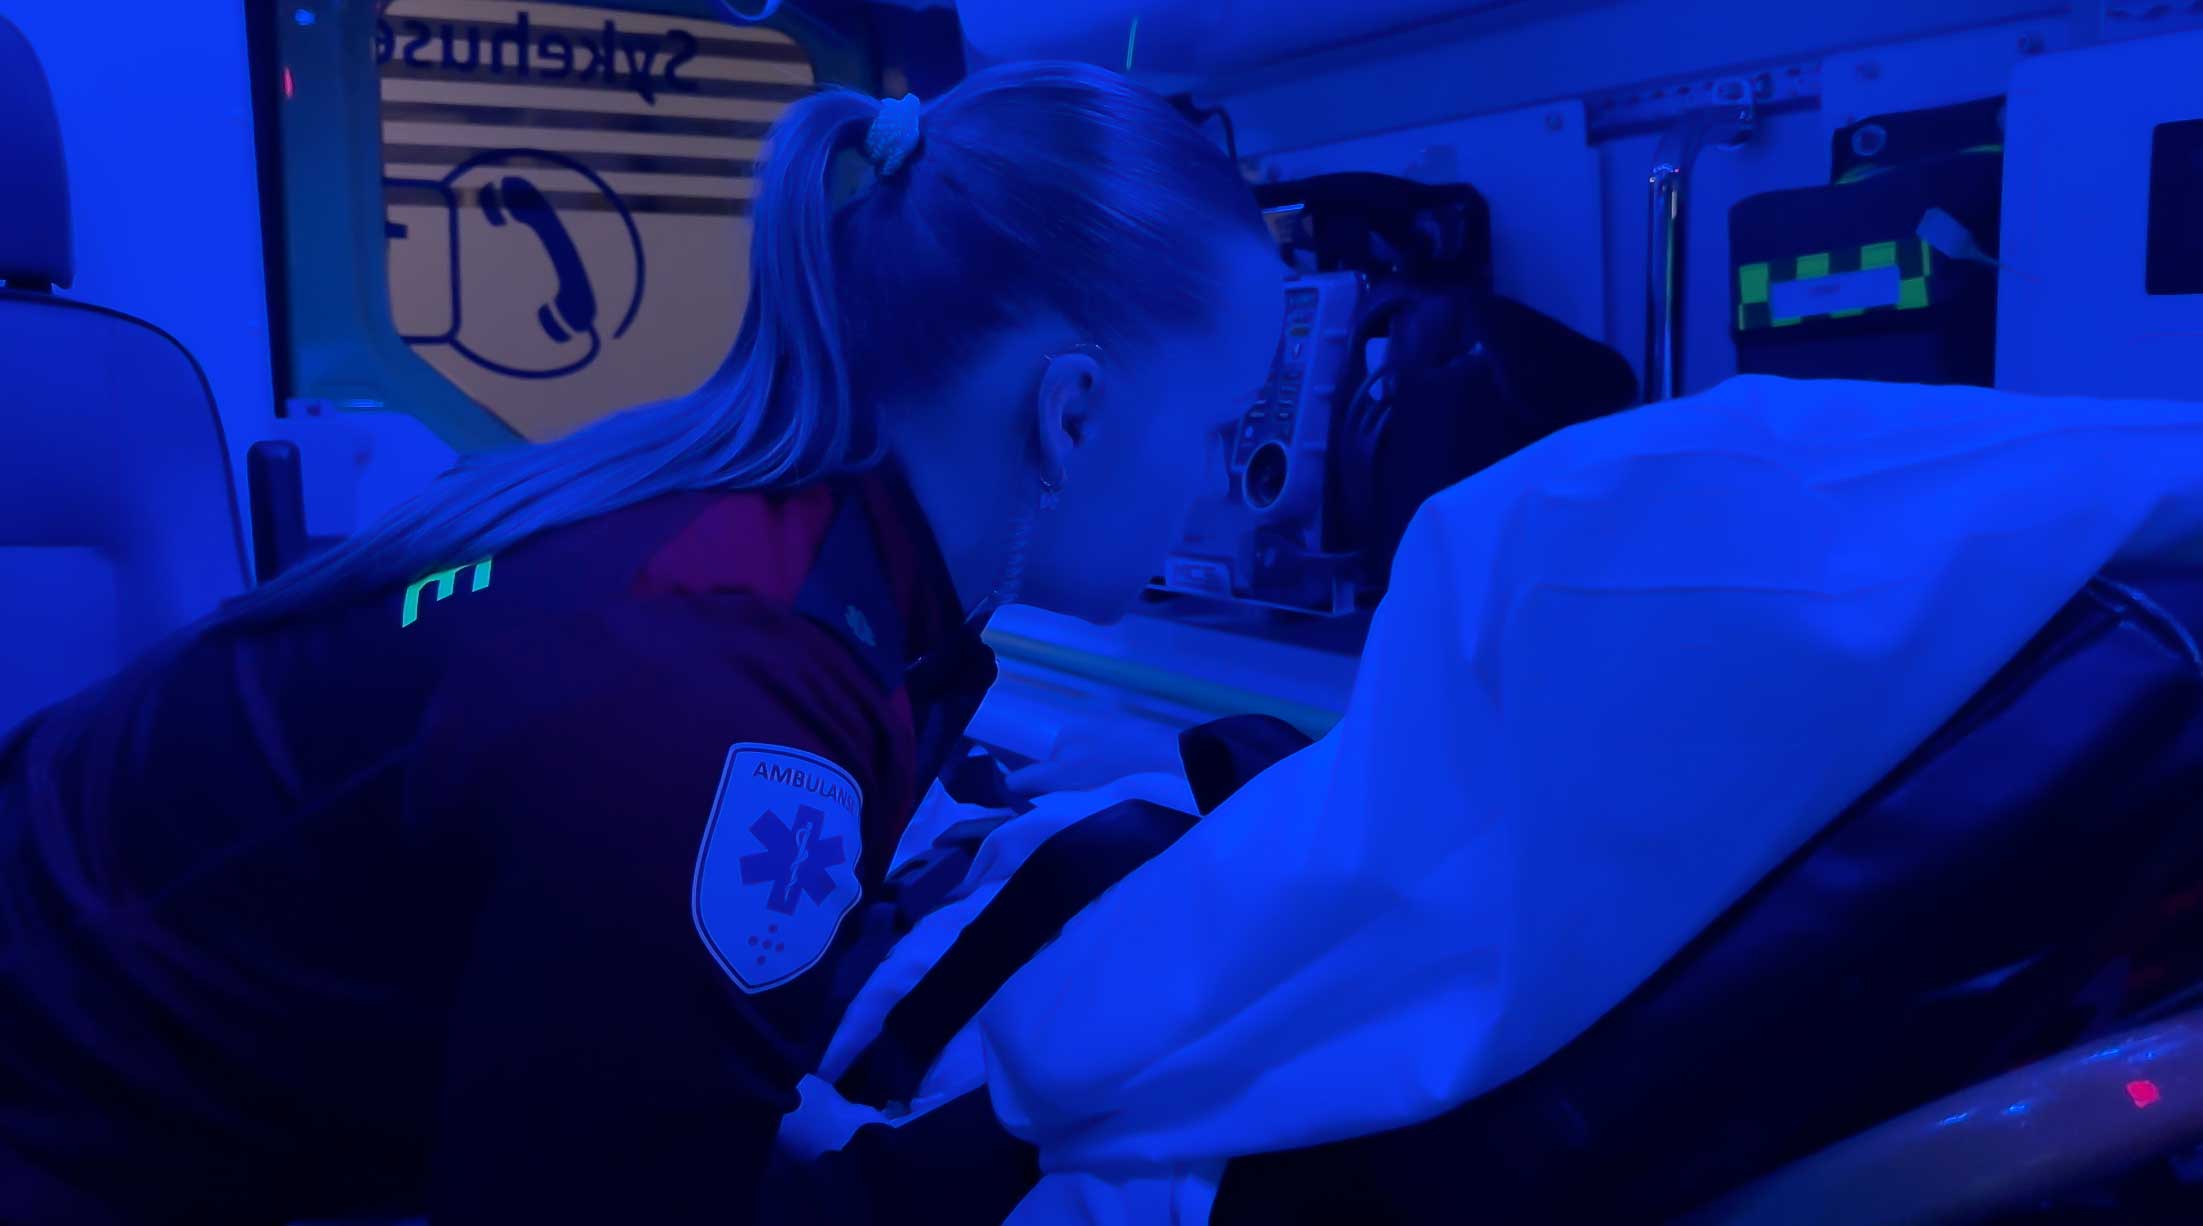 Dempet belysning i ambulansen er tiltak som bidrar til ro for pasienten. Foto: Jørn Finsrud.